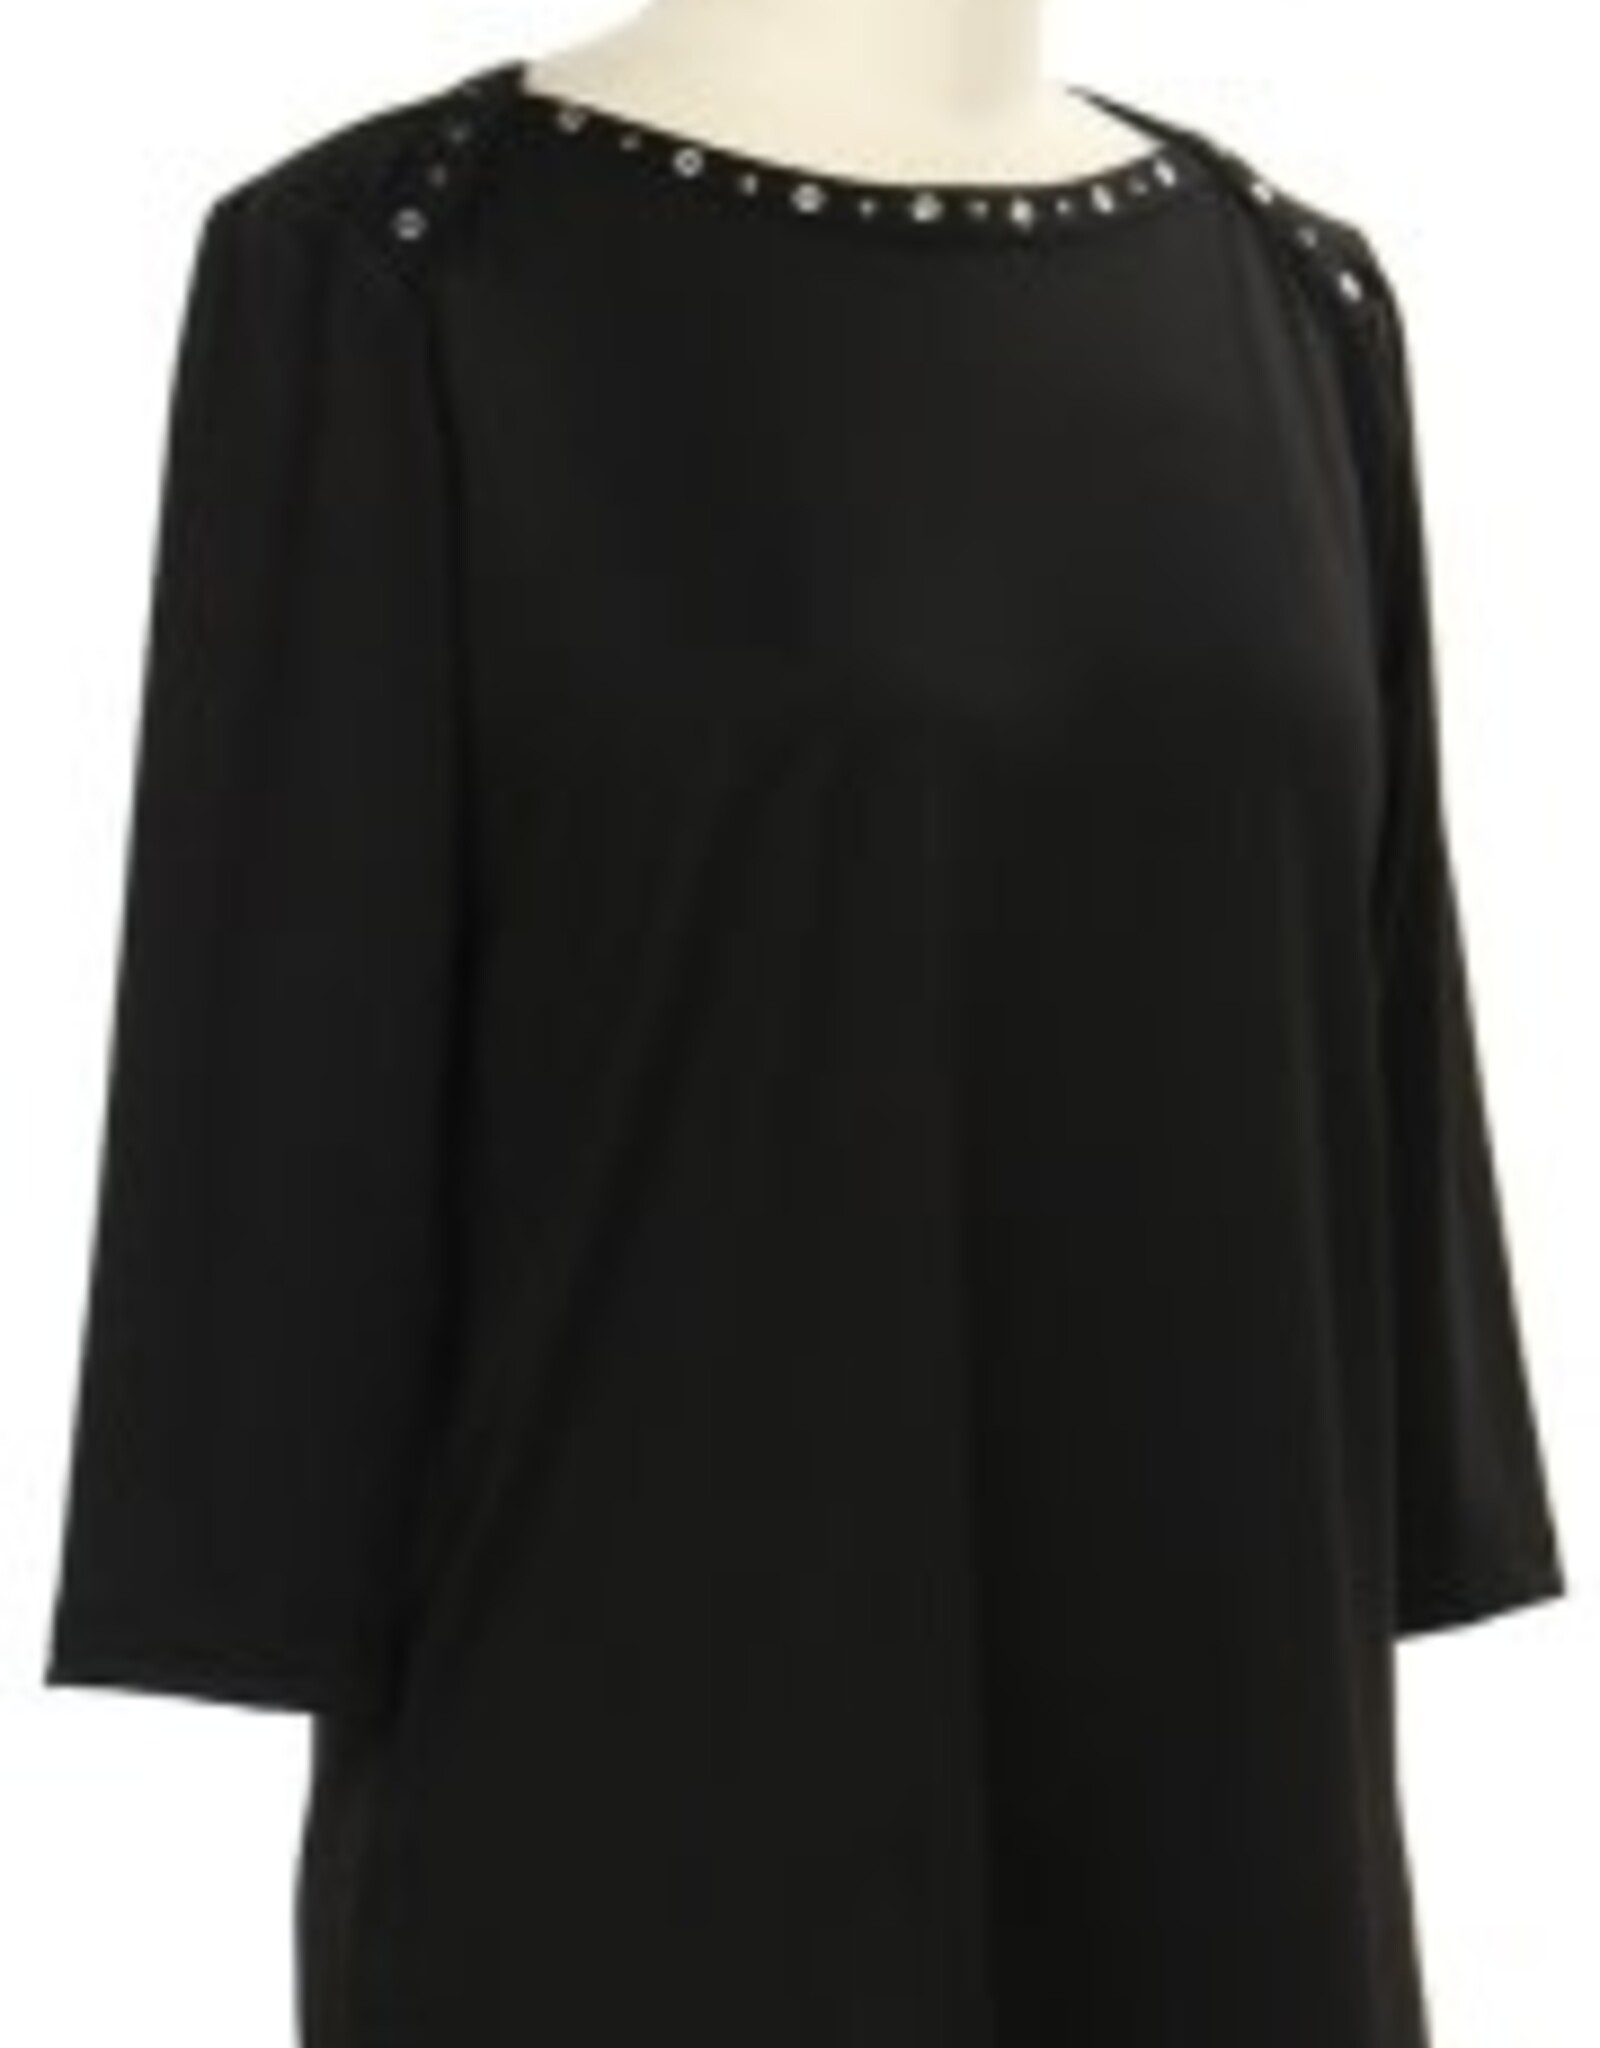 - Black Embellished Neck 3/4 Sleeve Top